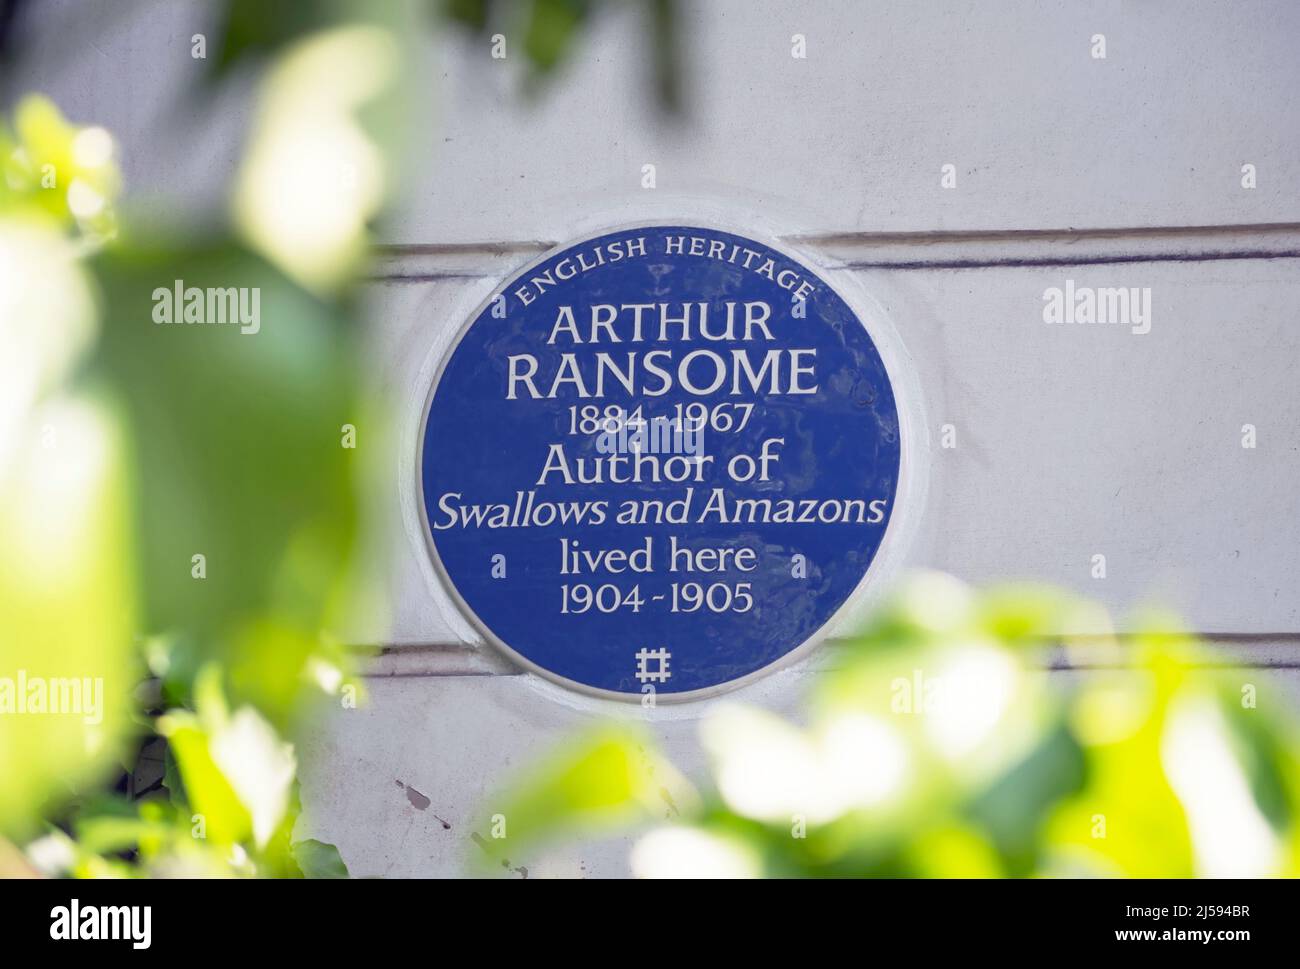 placa azul de herencia inglesa que marca un hogar del escritor arthur ransome, autor de golondrinas y amazonas, londres, inglaterra Foto de stock